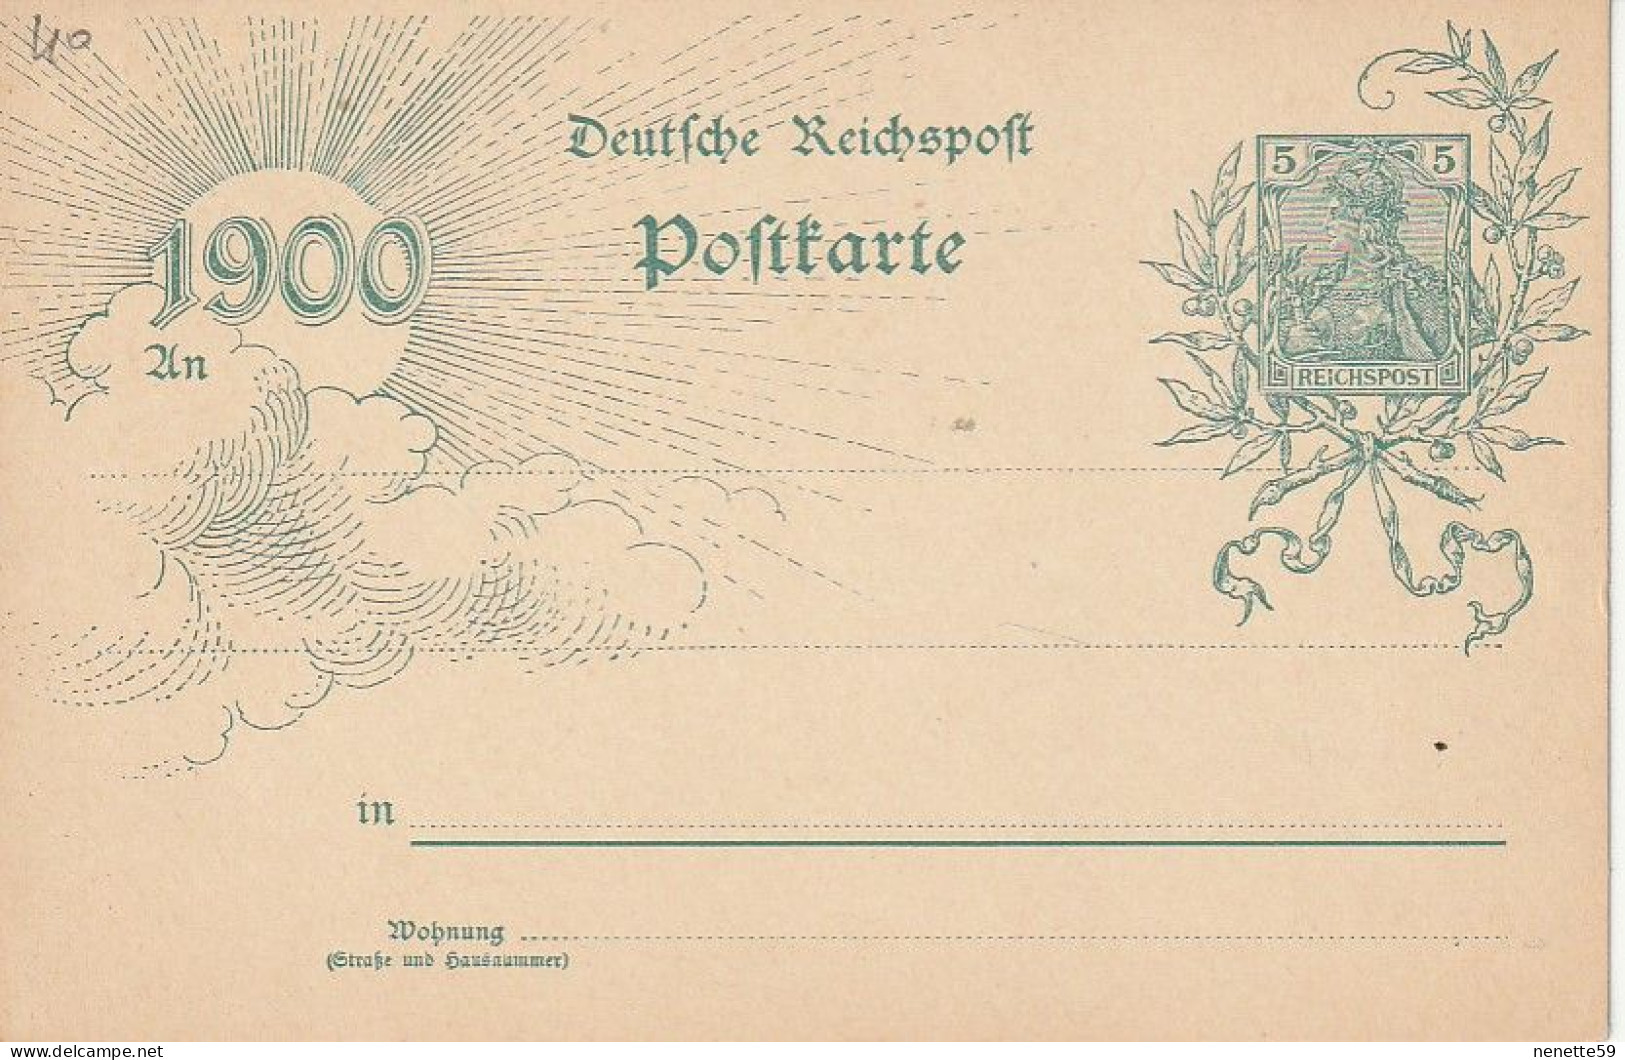 ALLEMAGNE - Entier Postal De 1900 - Deutche Reichspoft Poftkarte 1900 - Postcards